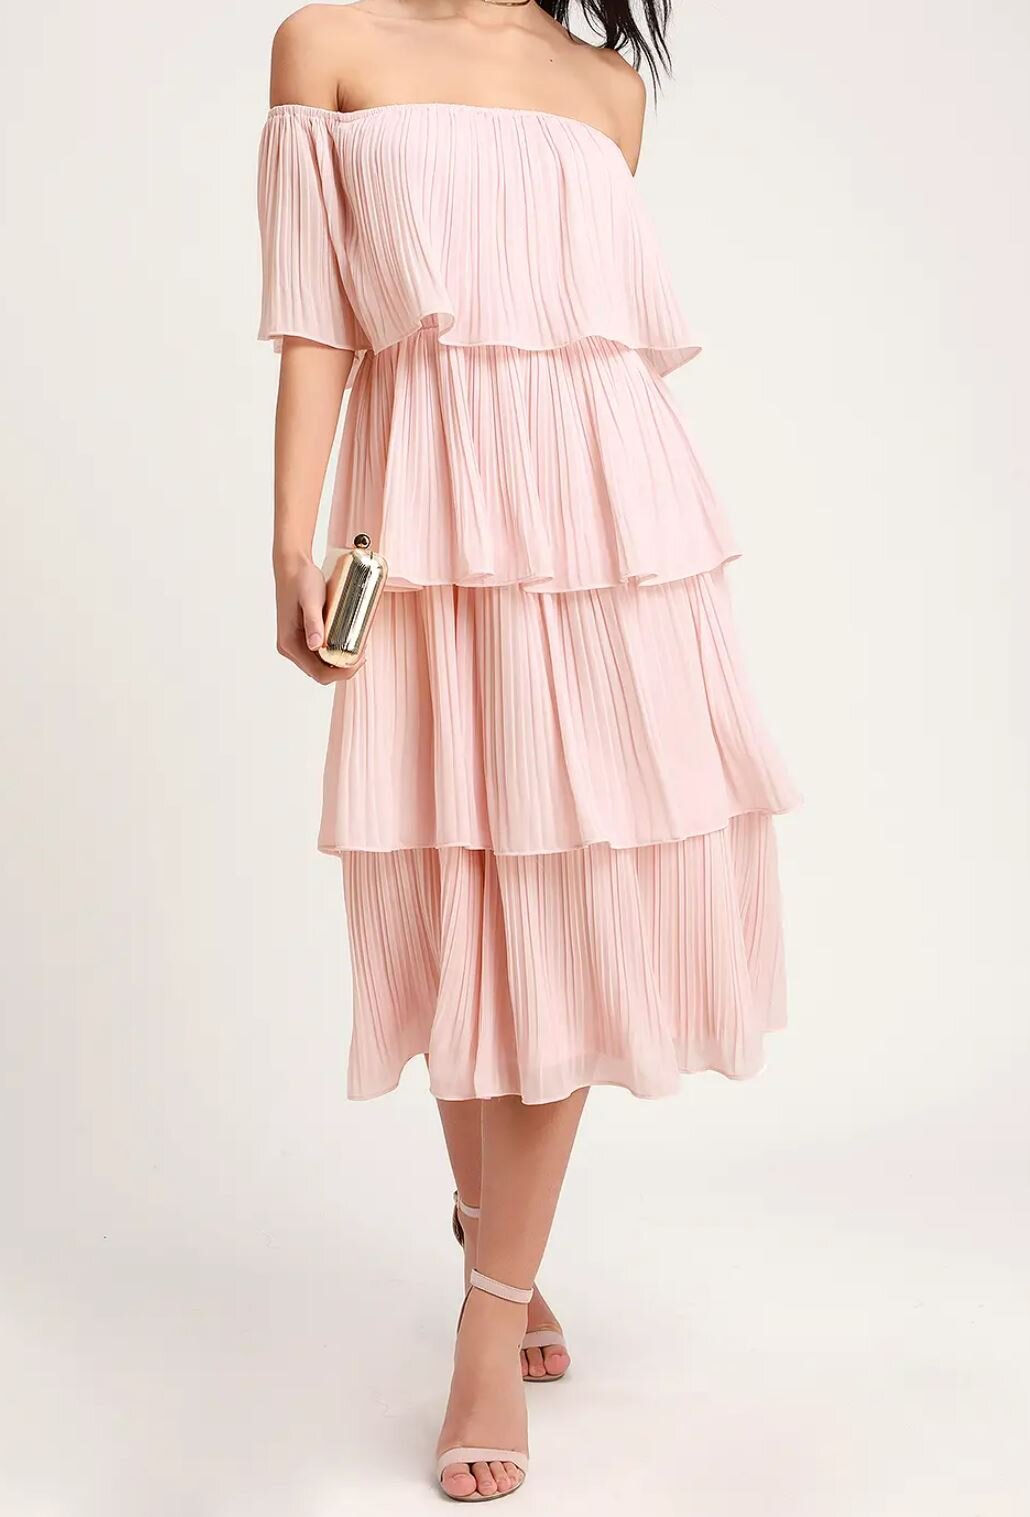 Blush Pink Tiered Ruffle Dress.JPG